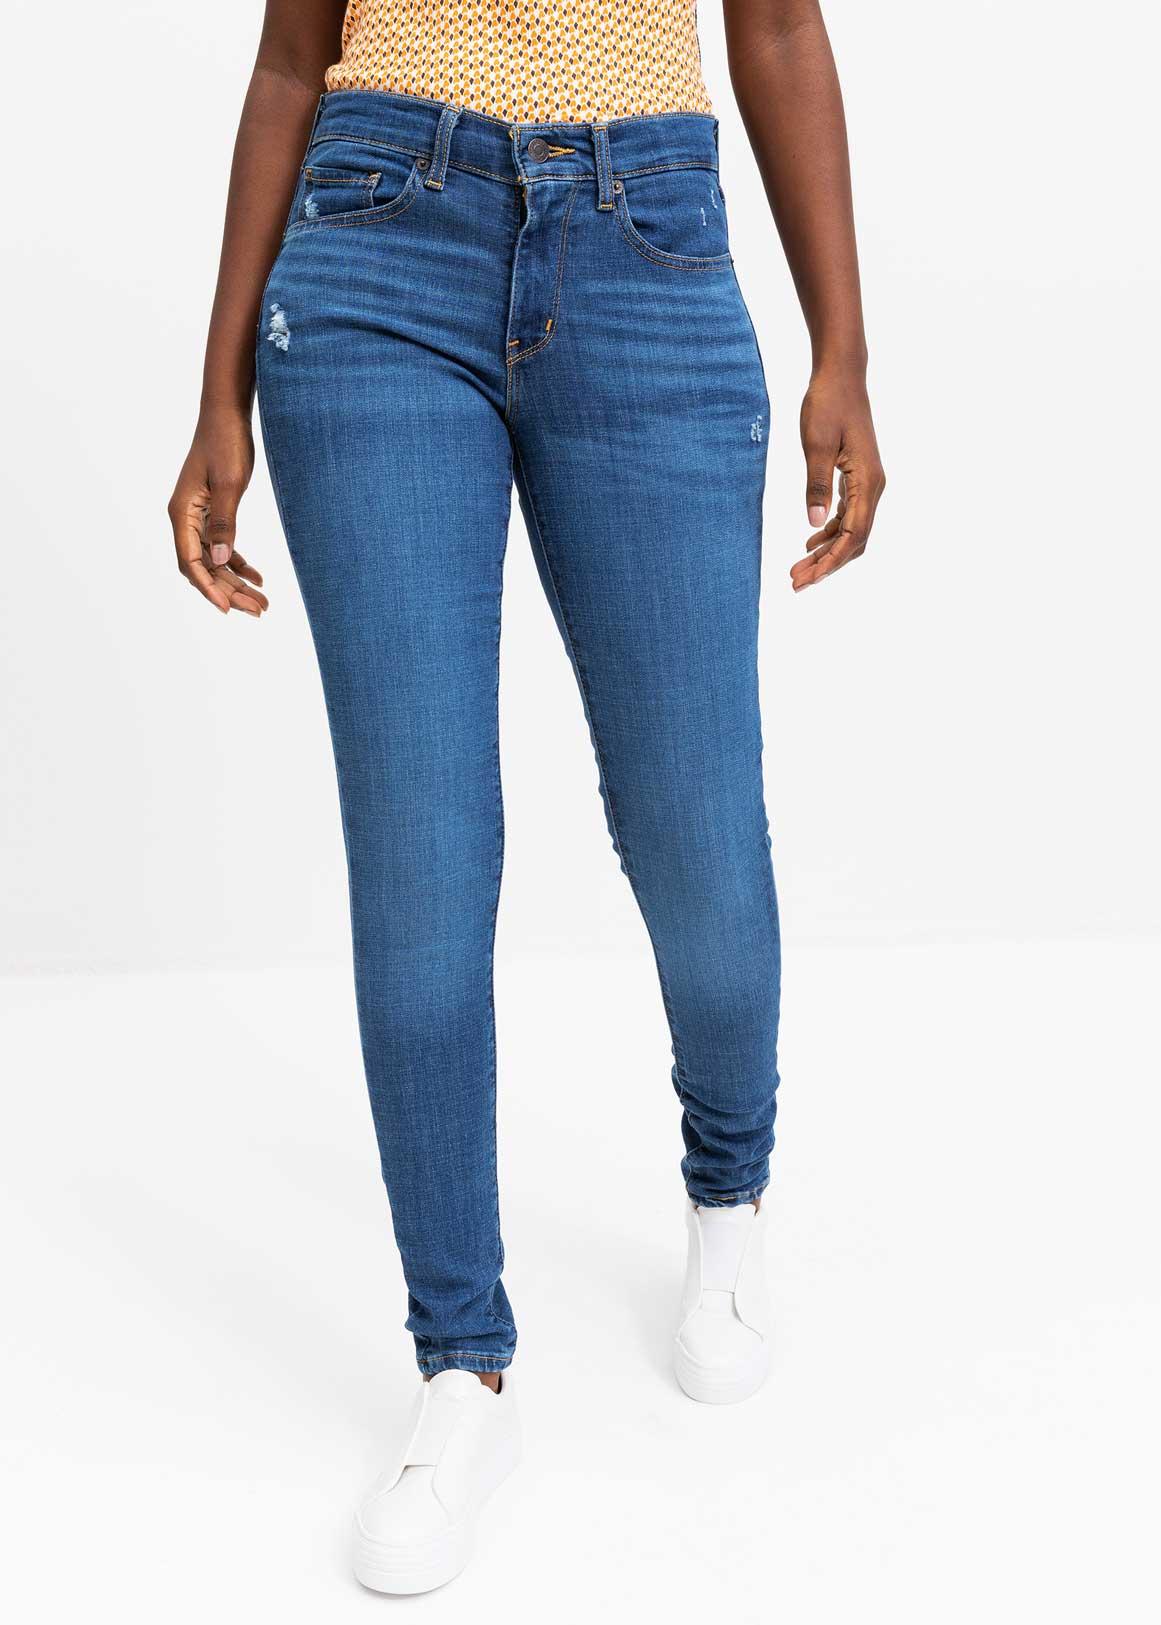 Seine High Rise Skinny Jeans 27 Inch - True Blue